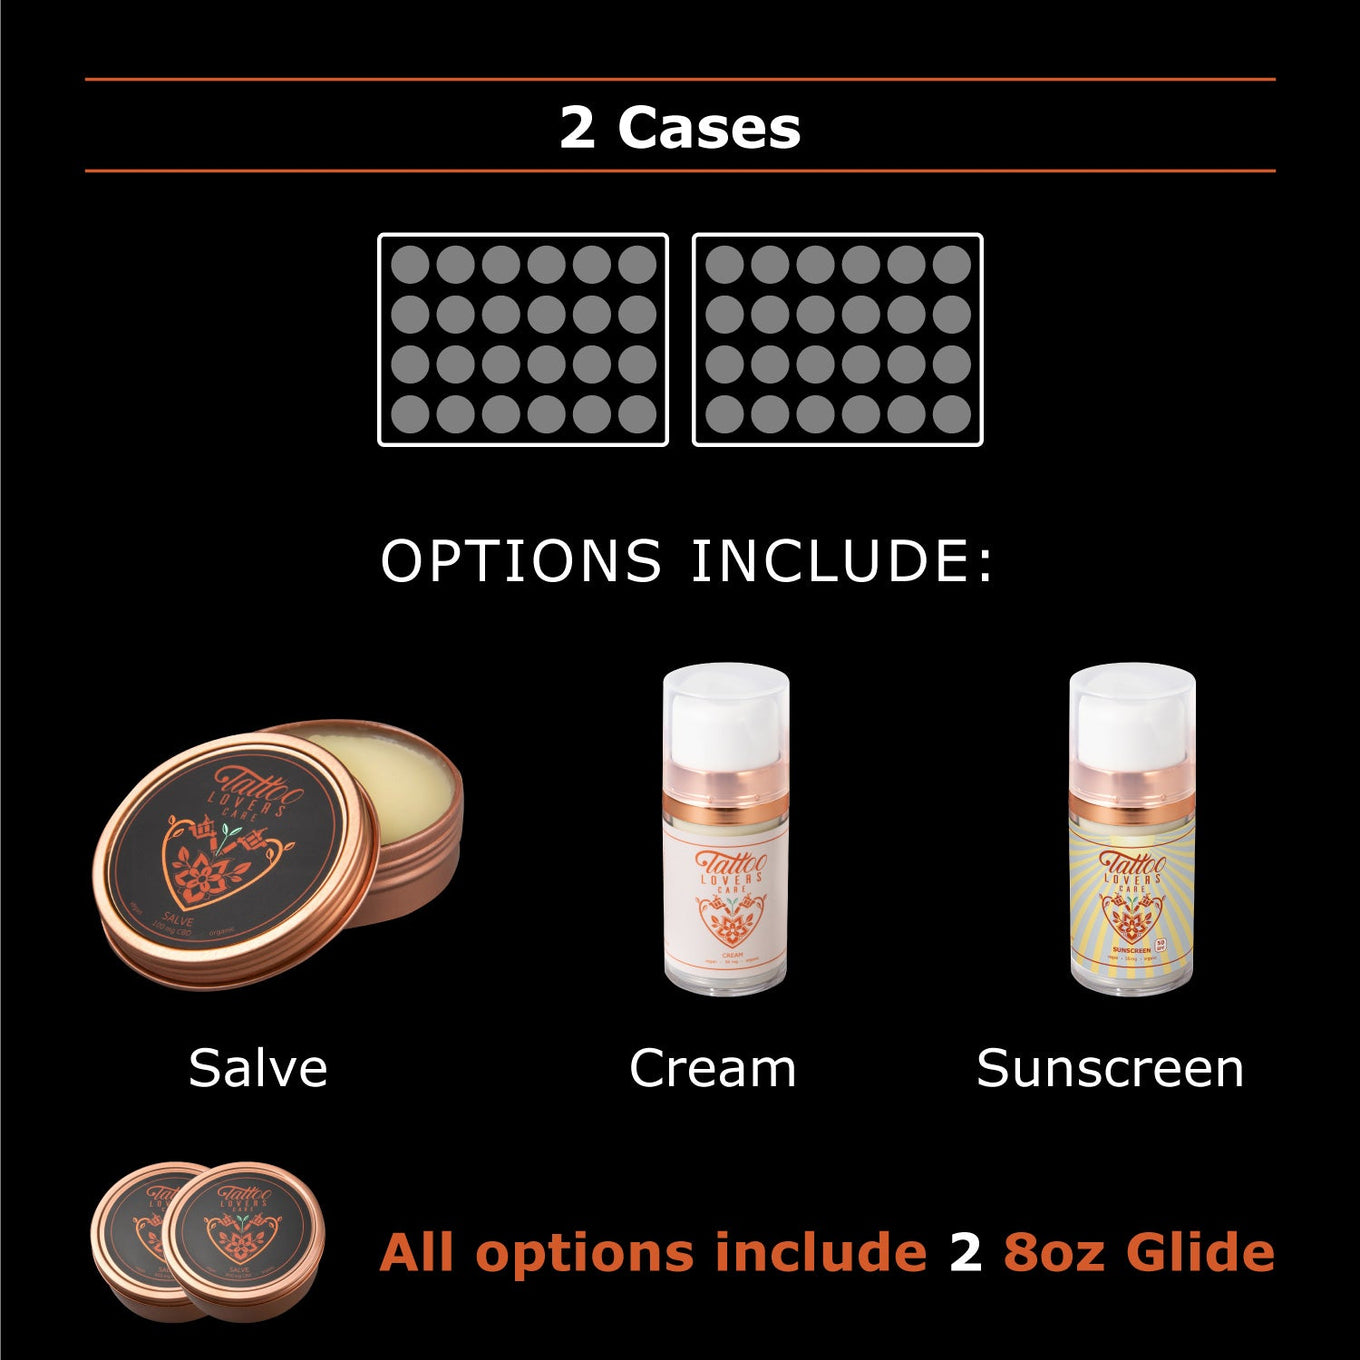 2 Case - 48 units (Salve, Cream, or Sunscreen)